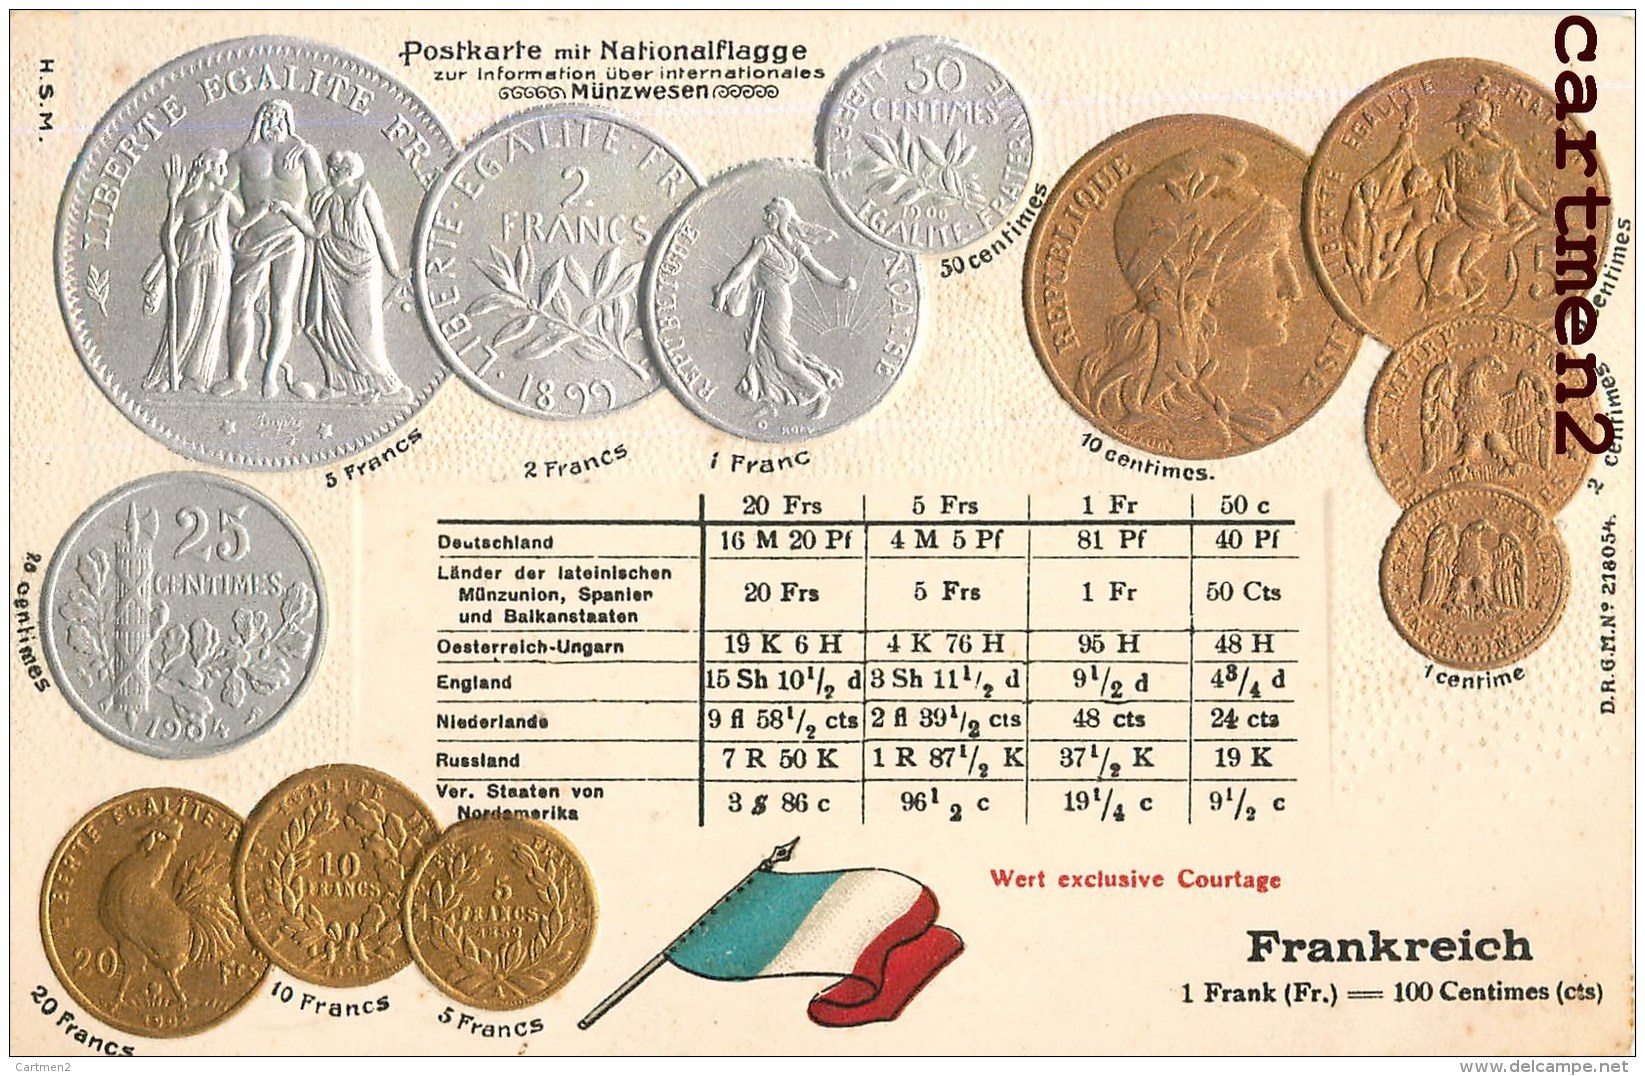 POSTKARTE MIT NATIONALFLAGGE LE FRANC FRANCAIS PIECEDE 5 FRANC EN ARGENT BOURSE GAUFREE EMBOSSED PATRIOTISME - Münzen (Abb.)